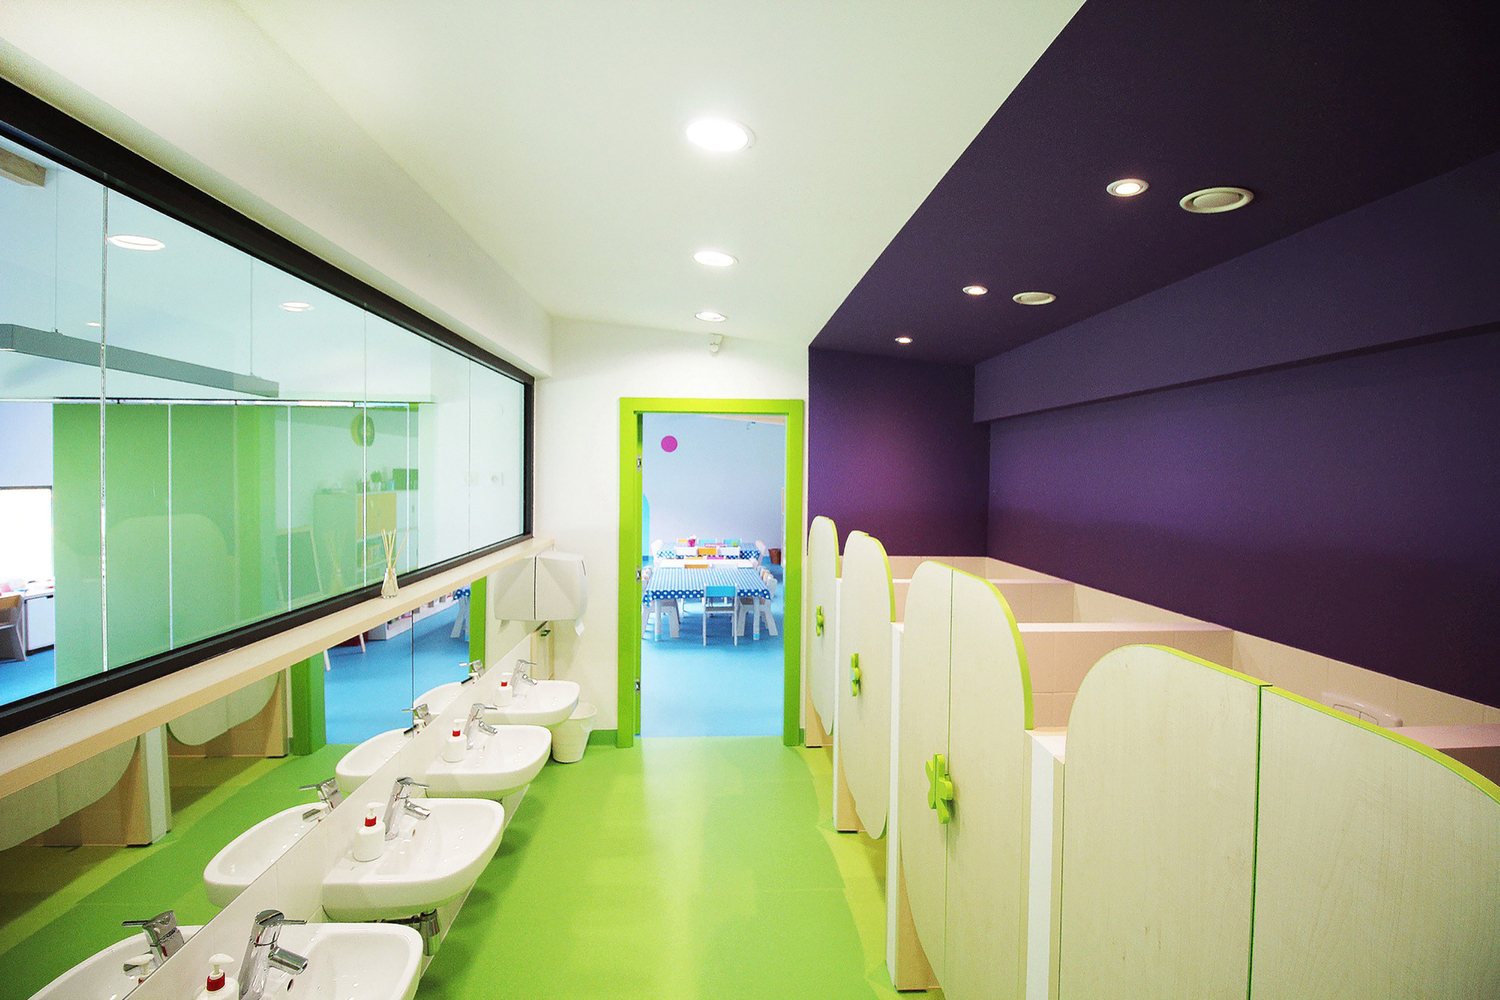 khu vực phòng vệ sinh cho bé rực rỡ sắc màu với nhiều ngăn buồng khác nhau